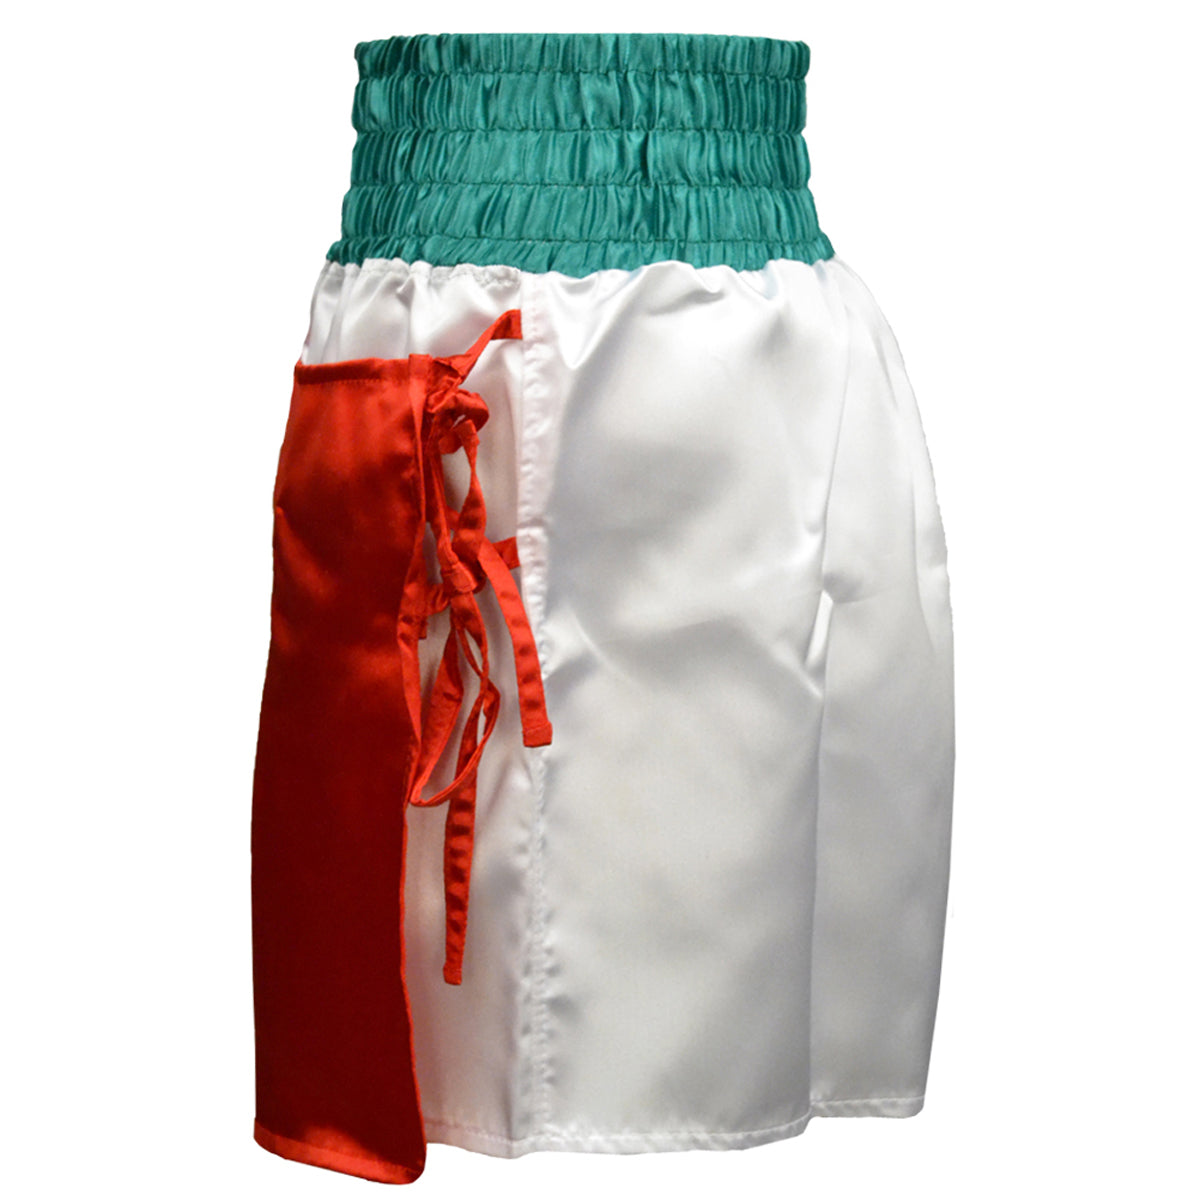 Cleto Reyes Women's Satin Boxing Skirt Trunks - Mexican Flag Cleto Reyes